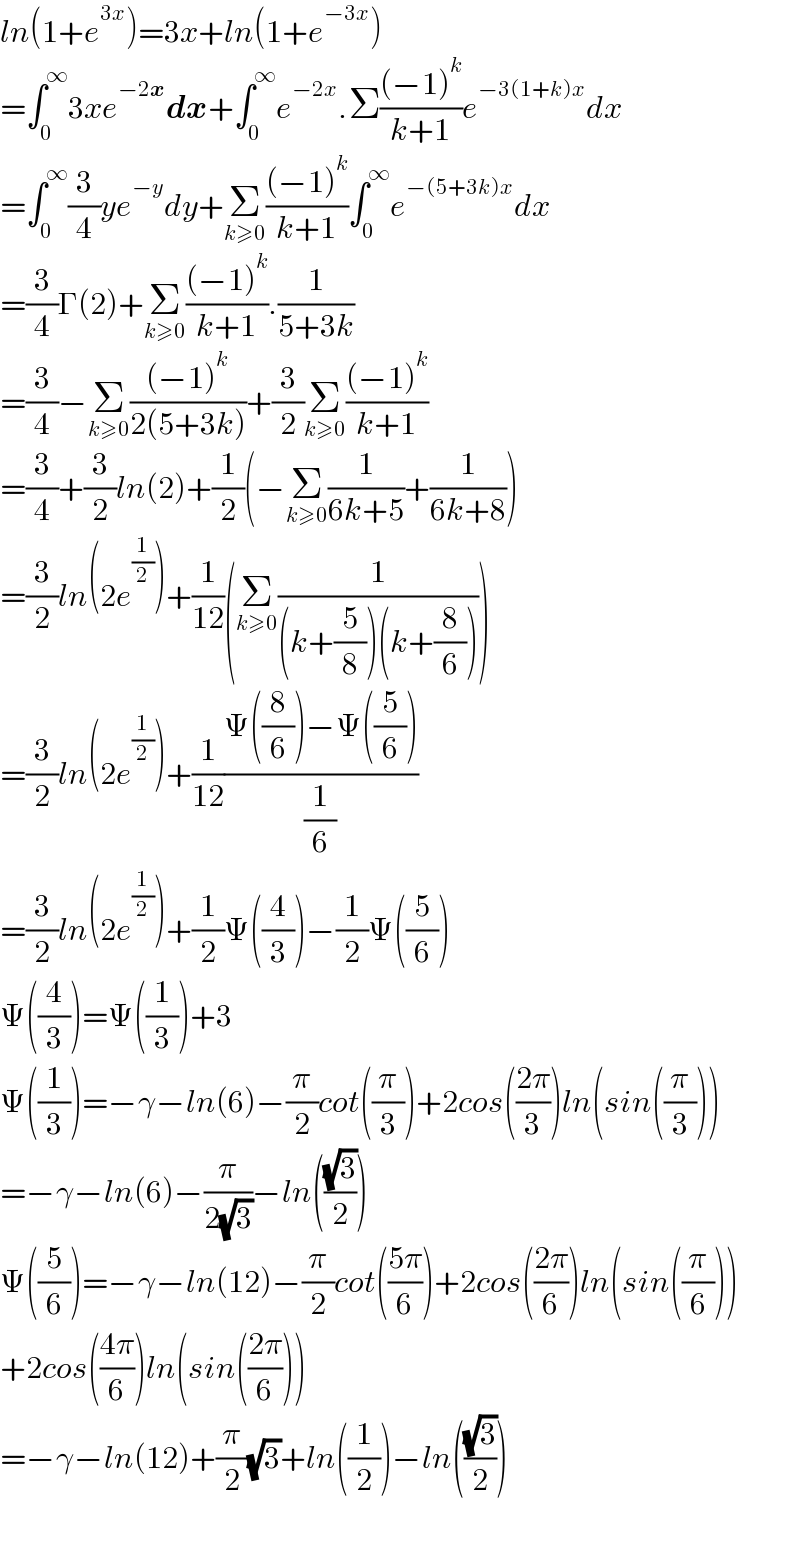 ln(1+e^(3x) )=3x+ln(1+e^(−3x) )  =∫_0 ^∞ 3xe^(−2x) dx+∫_0 ^∞ e^(−2x) .Σ(((−1)^k )/(k+1))e^(−3(1+k)x) dx  =∫_0 ^∞ (3/4)ye^(−y) dy+Σ_(k≥0) (((−1)^k )/(k+1))∫_0 ^∞ e^(−(5+3k)x) dx  =(3/4)Γ(2)+Σ_(k≥0) (((−1)^k )/(k+1)).(1/(5+3k))  =(3/4)−Σ_(k≥0) (((−1)^k )/(2(5+3k)))+(3/2)Σ_(k≥0) (((−1)^k )/(k+1))  =(3/4)+(3/2)ln(2)+(1/2)(−Σ_(k≥0) (1/(6k+5))+(1/(6k+8)))  =(3/2)ln(2e^(1/2) )+(1/(12))(Σ_(k≥0) (1/((k+(5/8))(k+(8/6)))))  =(3/2)ln(2e^(1/2) )+(1/(12))((Ψ((8/6))−Ψ((5/6)))/(1/6))  =(3/2)ln(2e^(1/2) )+(1/2)Ψ((4/3))−(1/2)Ψ((5/6))  Ψ((4/3))=Ψ((1/3))+3  Ψ((1/3))=−γ−ln(6)−(π/2)cot((π/3))+2cos(((2π)/3))ln(sin((π/3)))  =−γ−ln(6)−(π/(2(√3)))−ln(((√3)/2))  Ψ((5/6))=−γ−ln(12)−(π/2)cot(((5π)/6))+2cos(((2π)/6))ln(sin((π/6)))  +2cos(((4π)/6))ln(sin(((2π)/6)))  =−γ−ln(12)+(π/2)(√3)+ln((1/2))−ln(((√3)/2))    